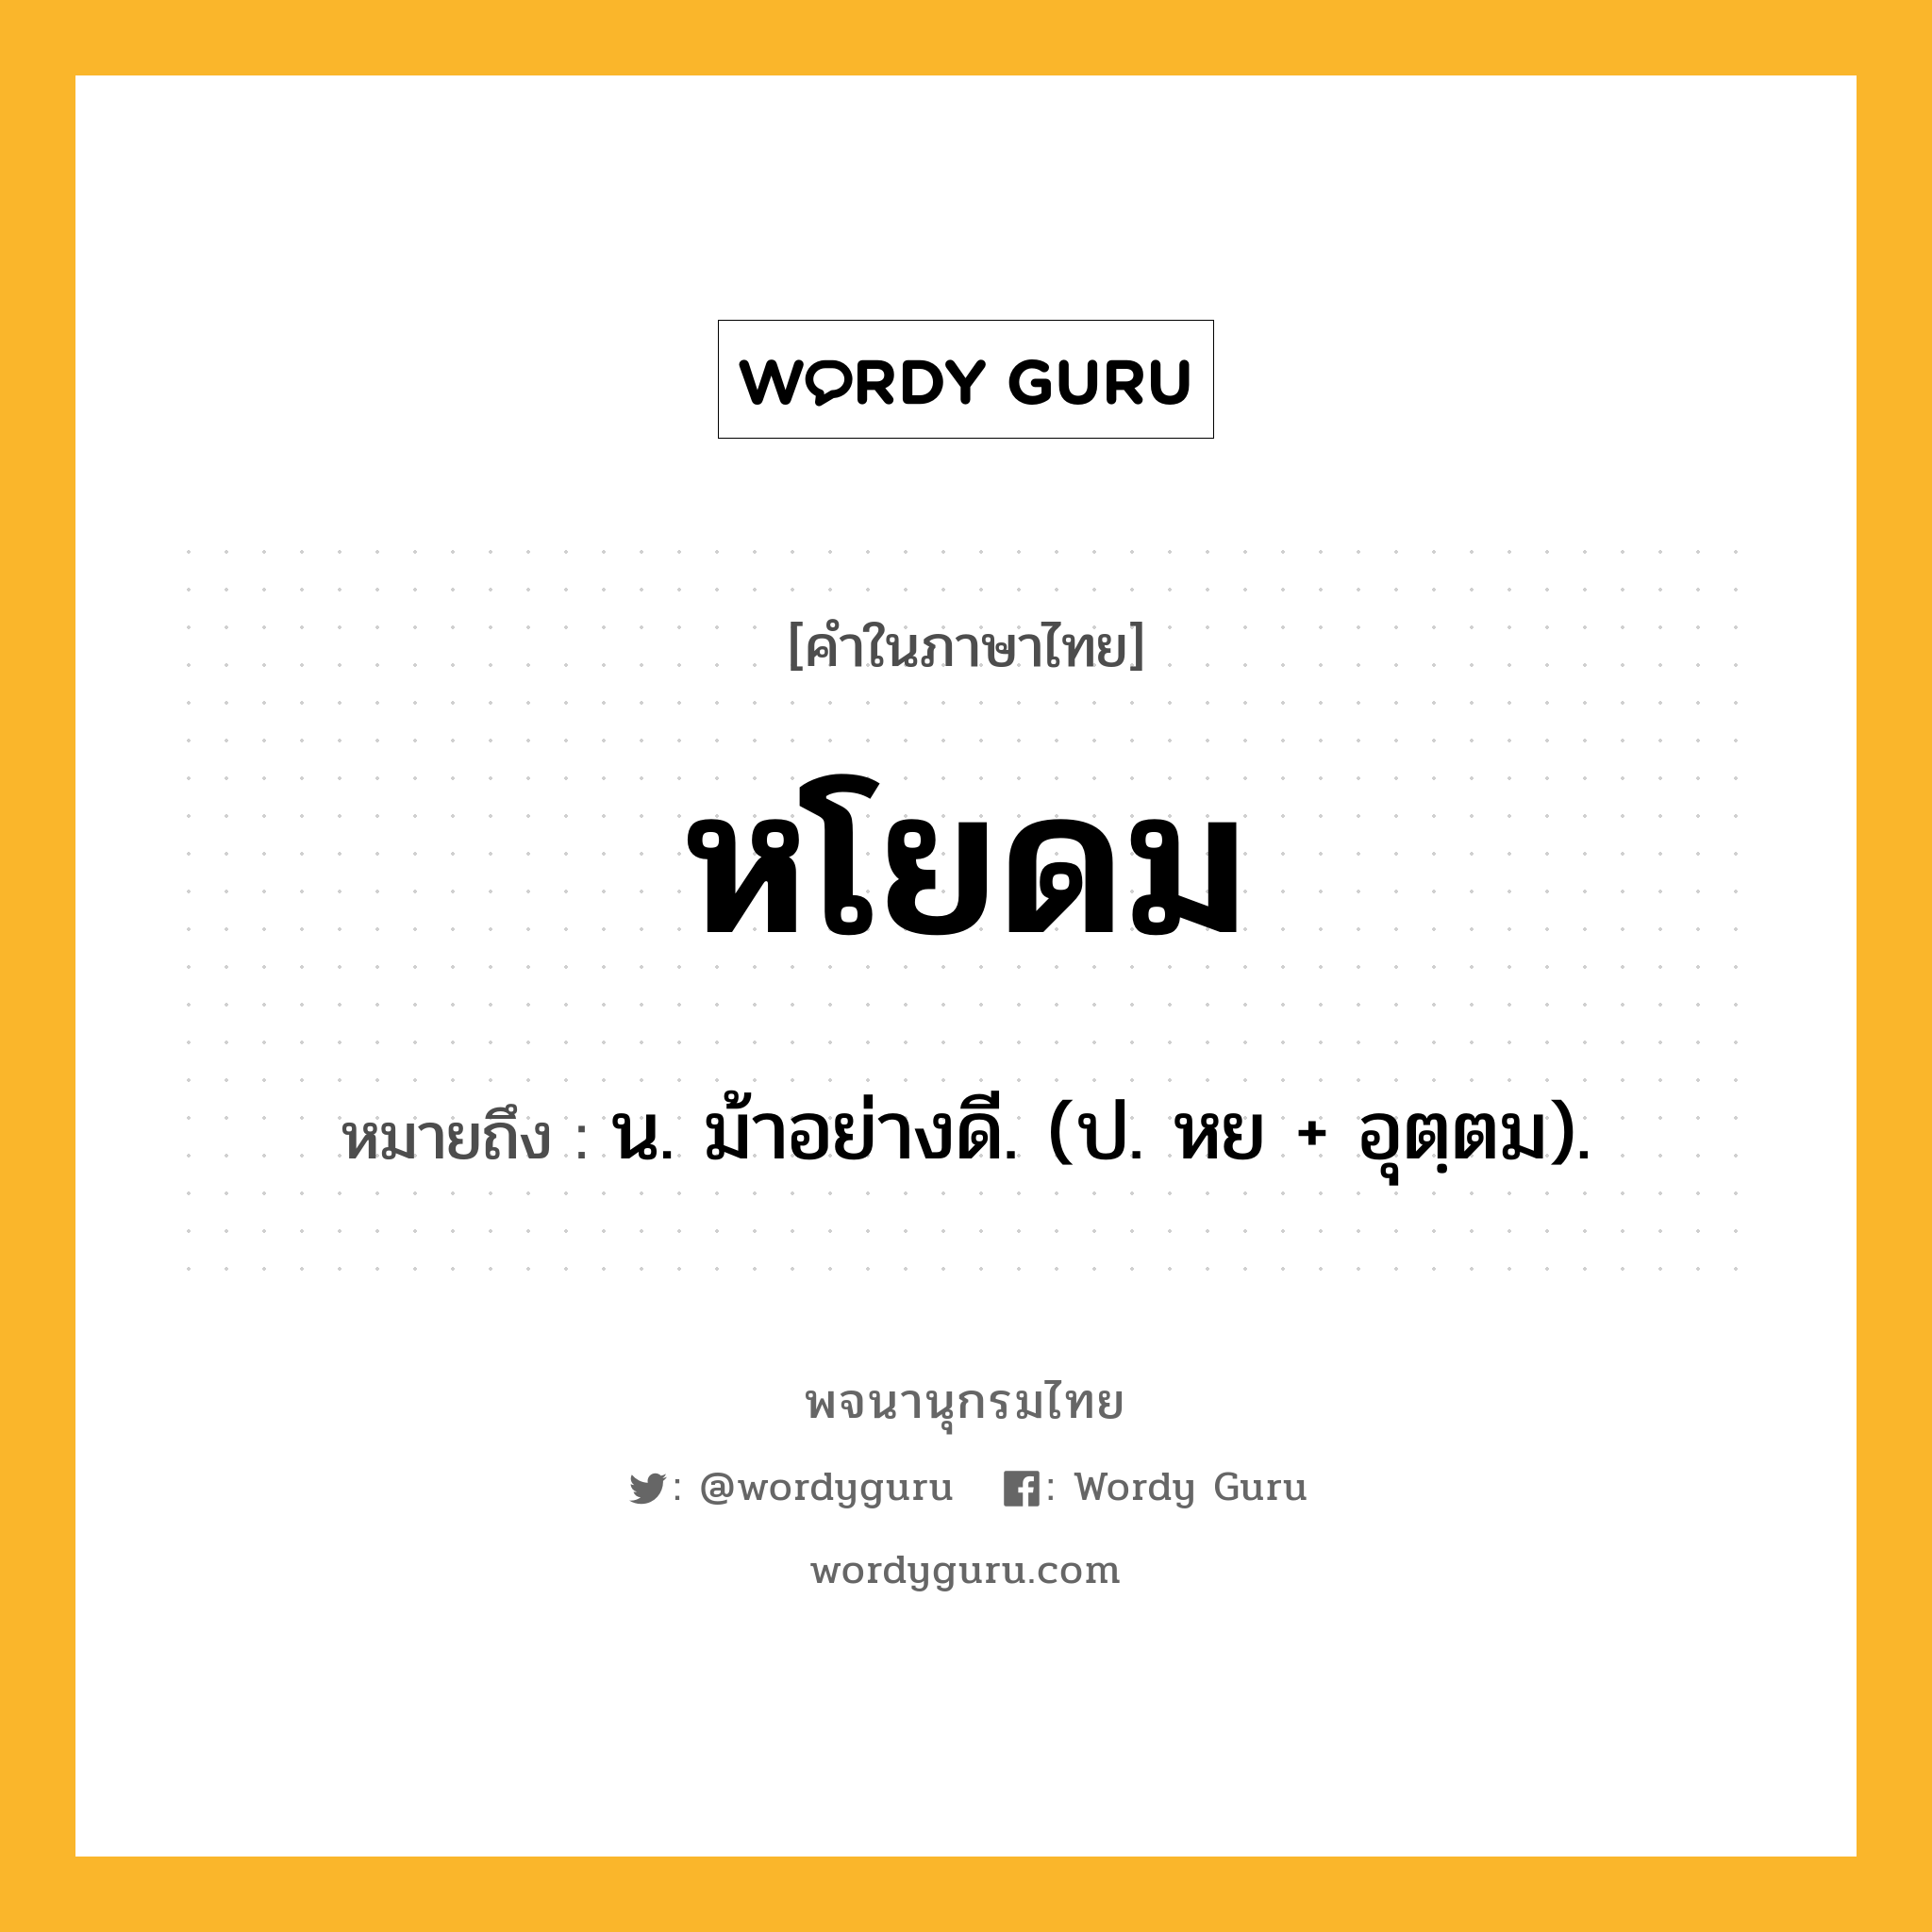 หโยดม หมายถึงอะไร?, คำในภาษาไทย หโยดม หมายถึง น. ม้าอย่างดี. (ป. หย + อุตฺตม).